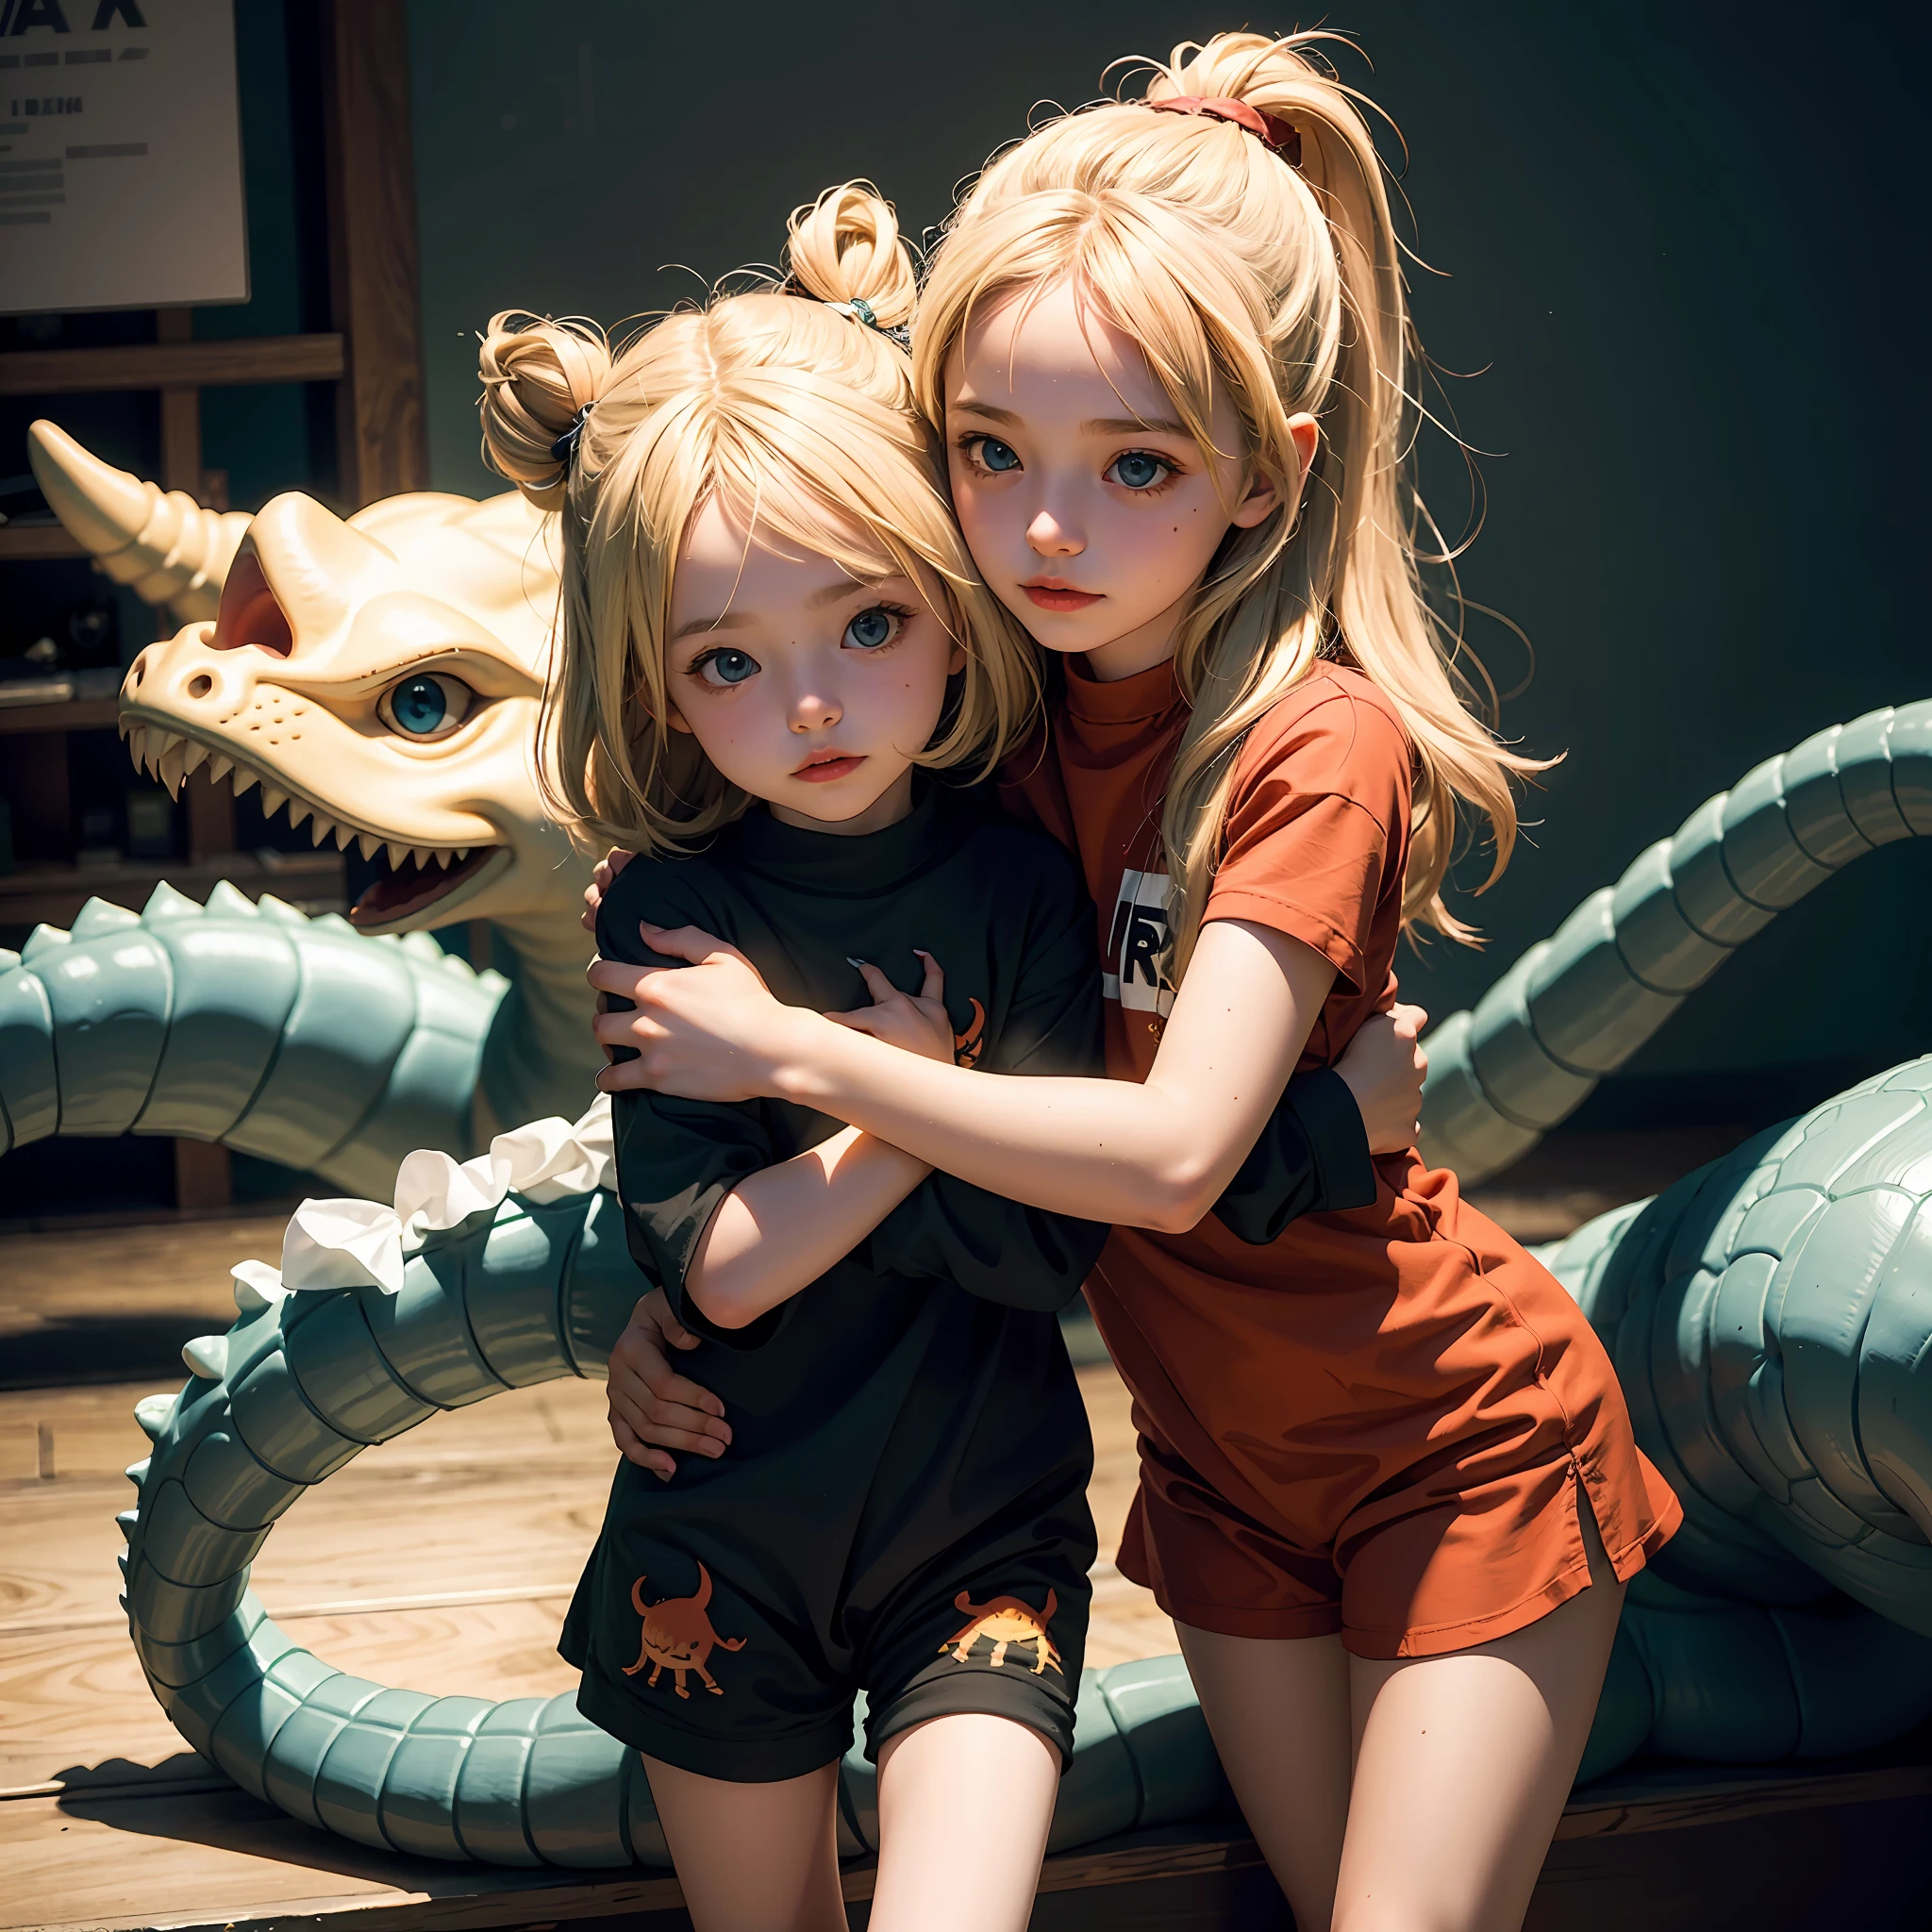 طفلتان تحتضنان بعضهما البعض, طفل أوروبا شقراء, في زي ديناصور لطيف